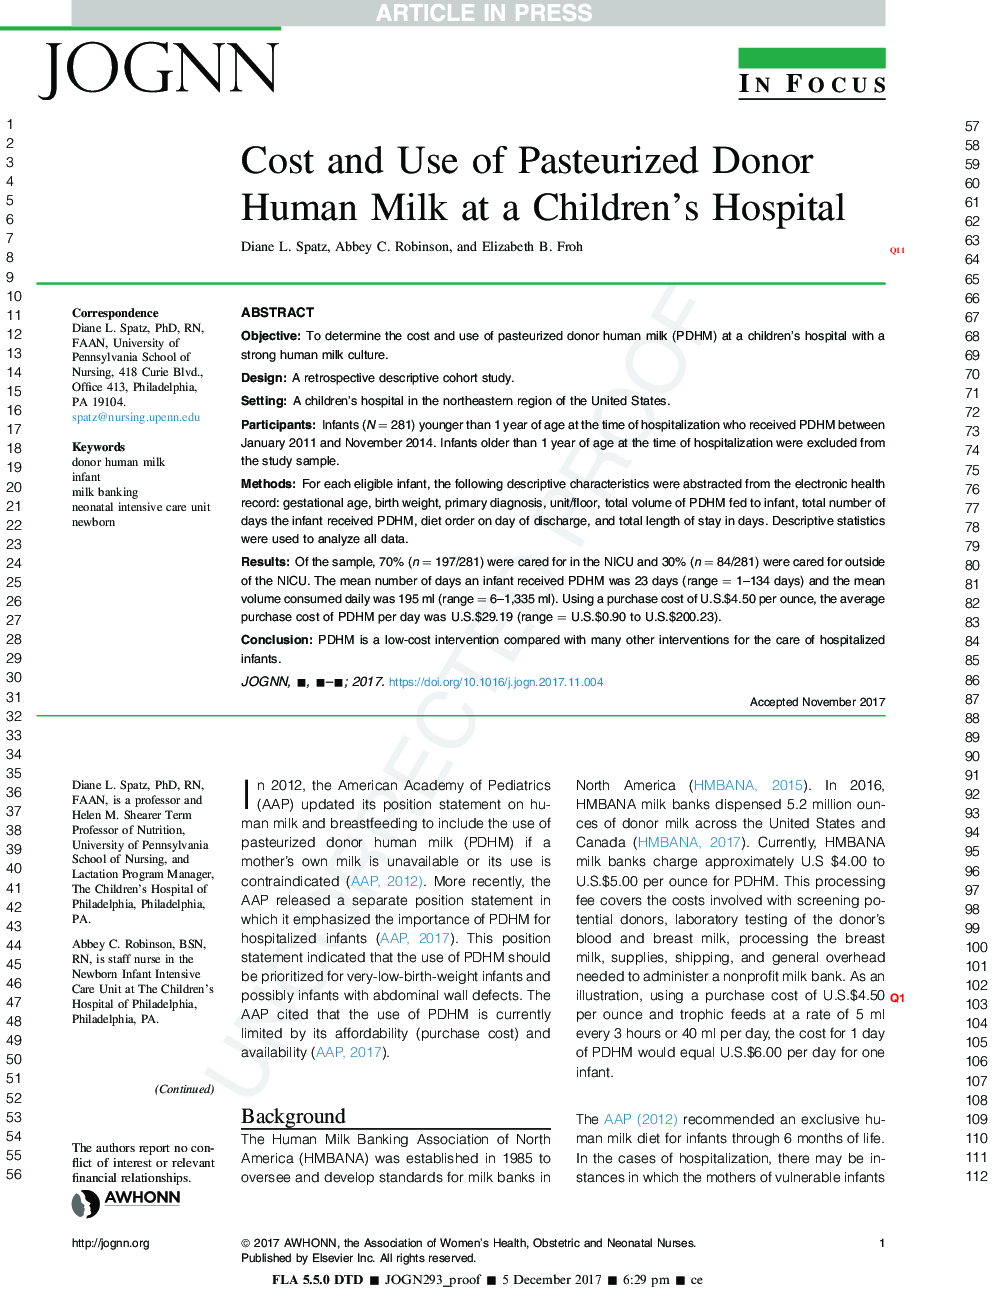 هزینه و استفاده از شیر انسانی پاستوریزه شده در بیمارستان کودکان 